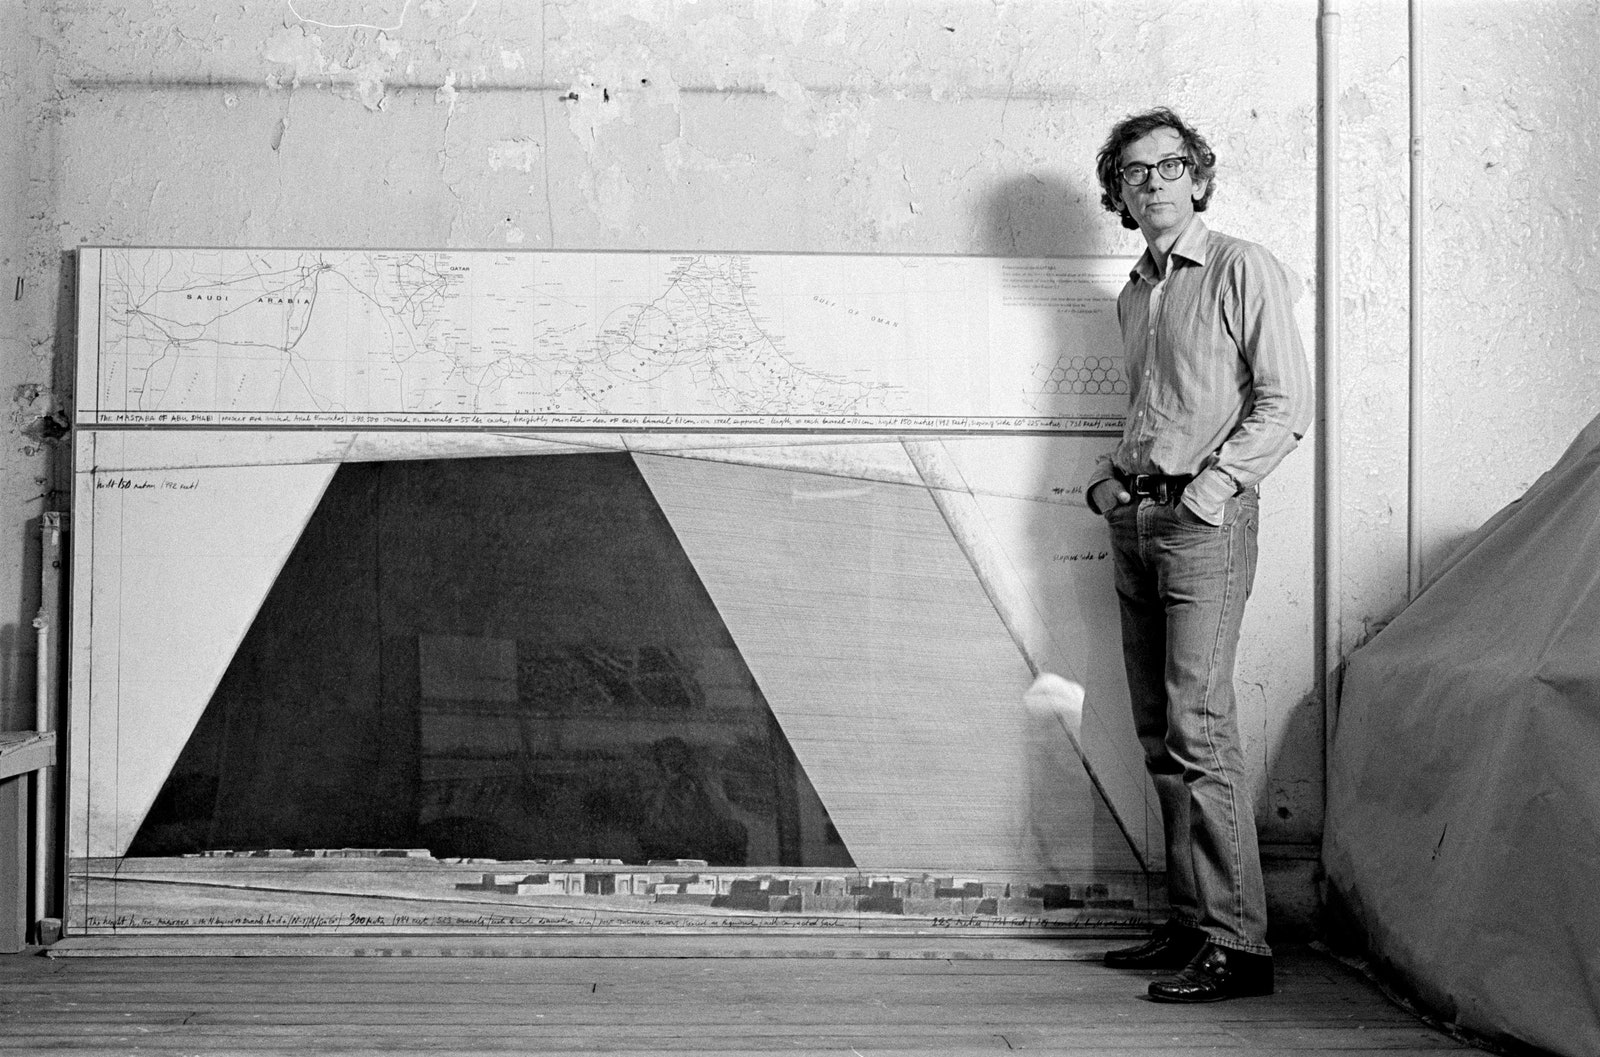 Христо в своей студии с проектным рисунком Мастабы. НьюЙорк 1984 год. Фото Вольфганг Вольц © 1984 Фонд Христо и ЖанныКлод.